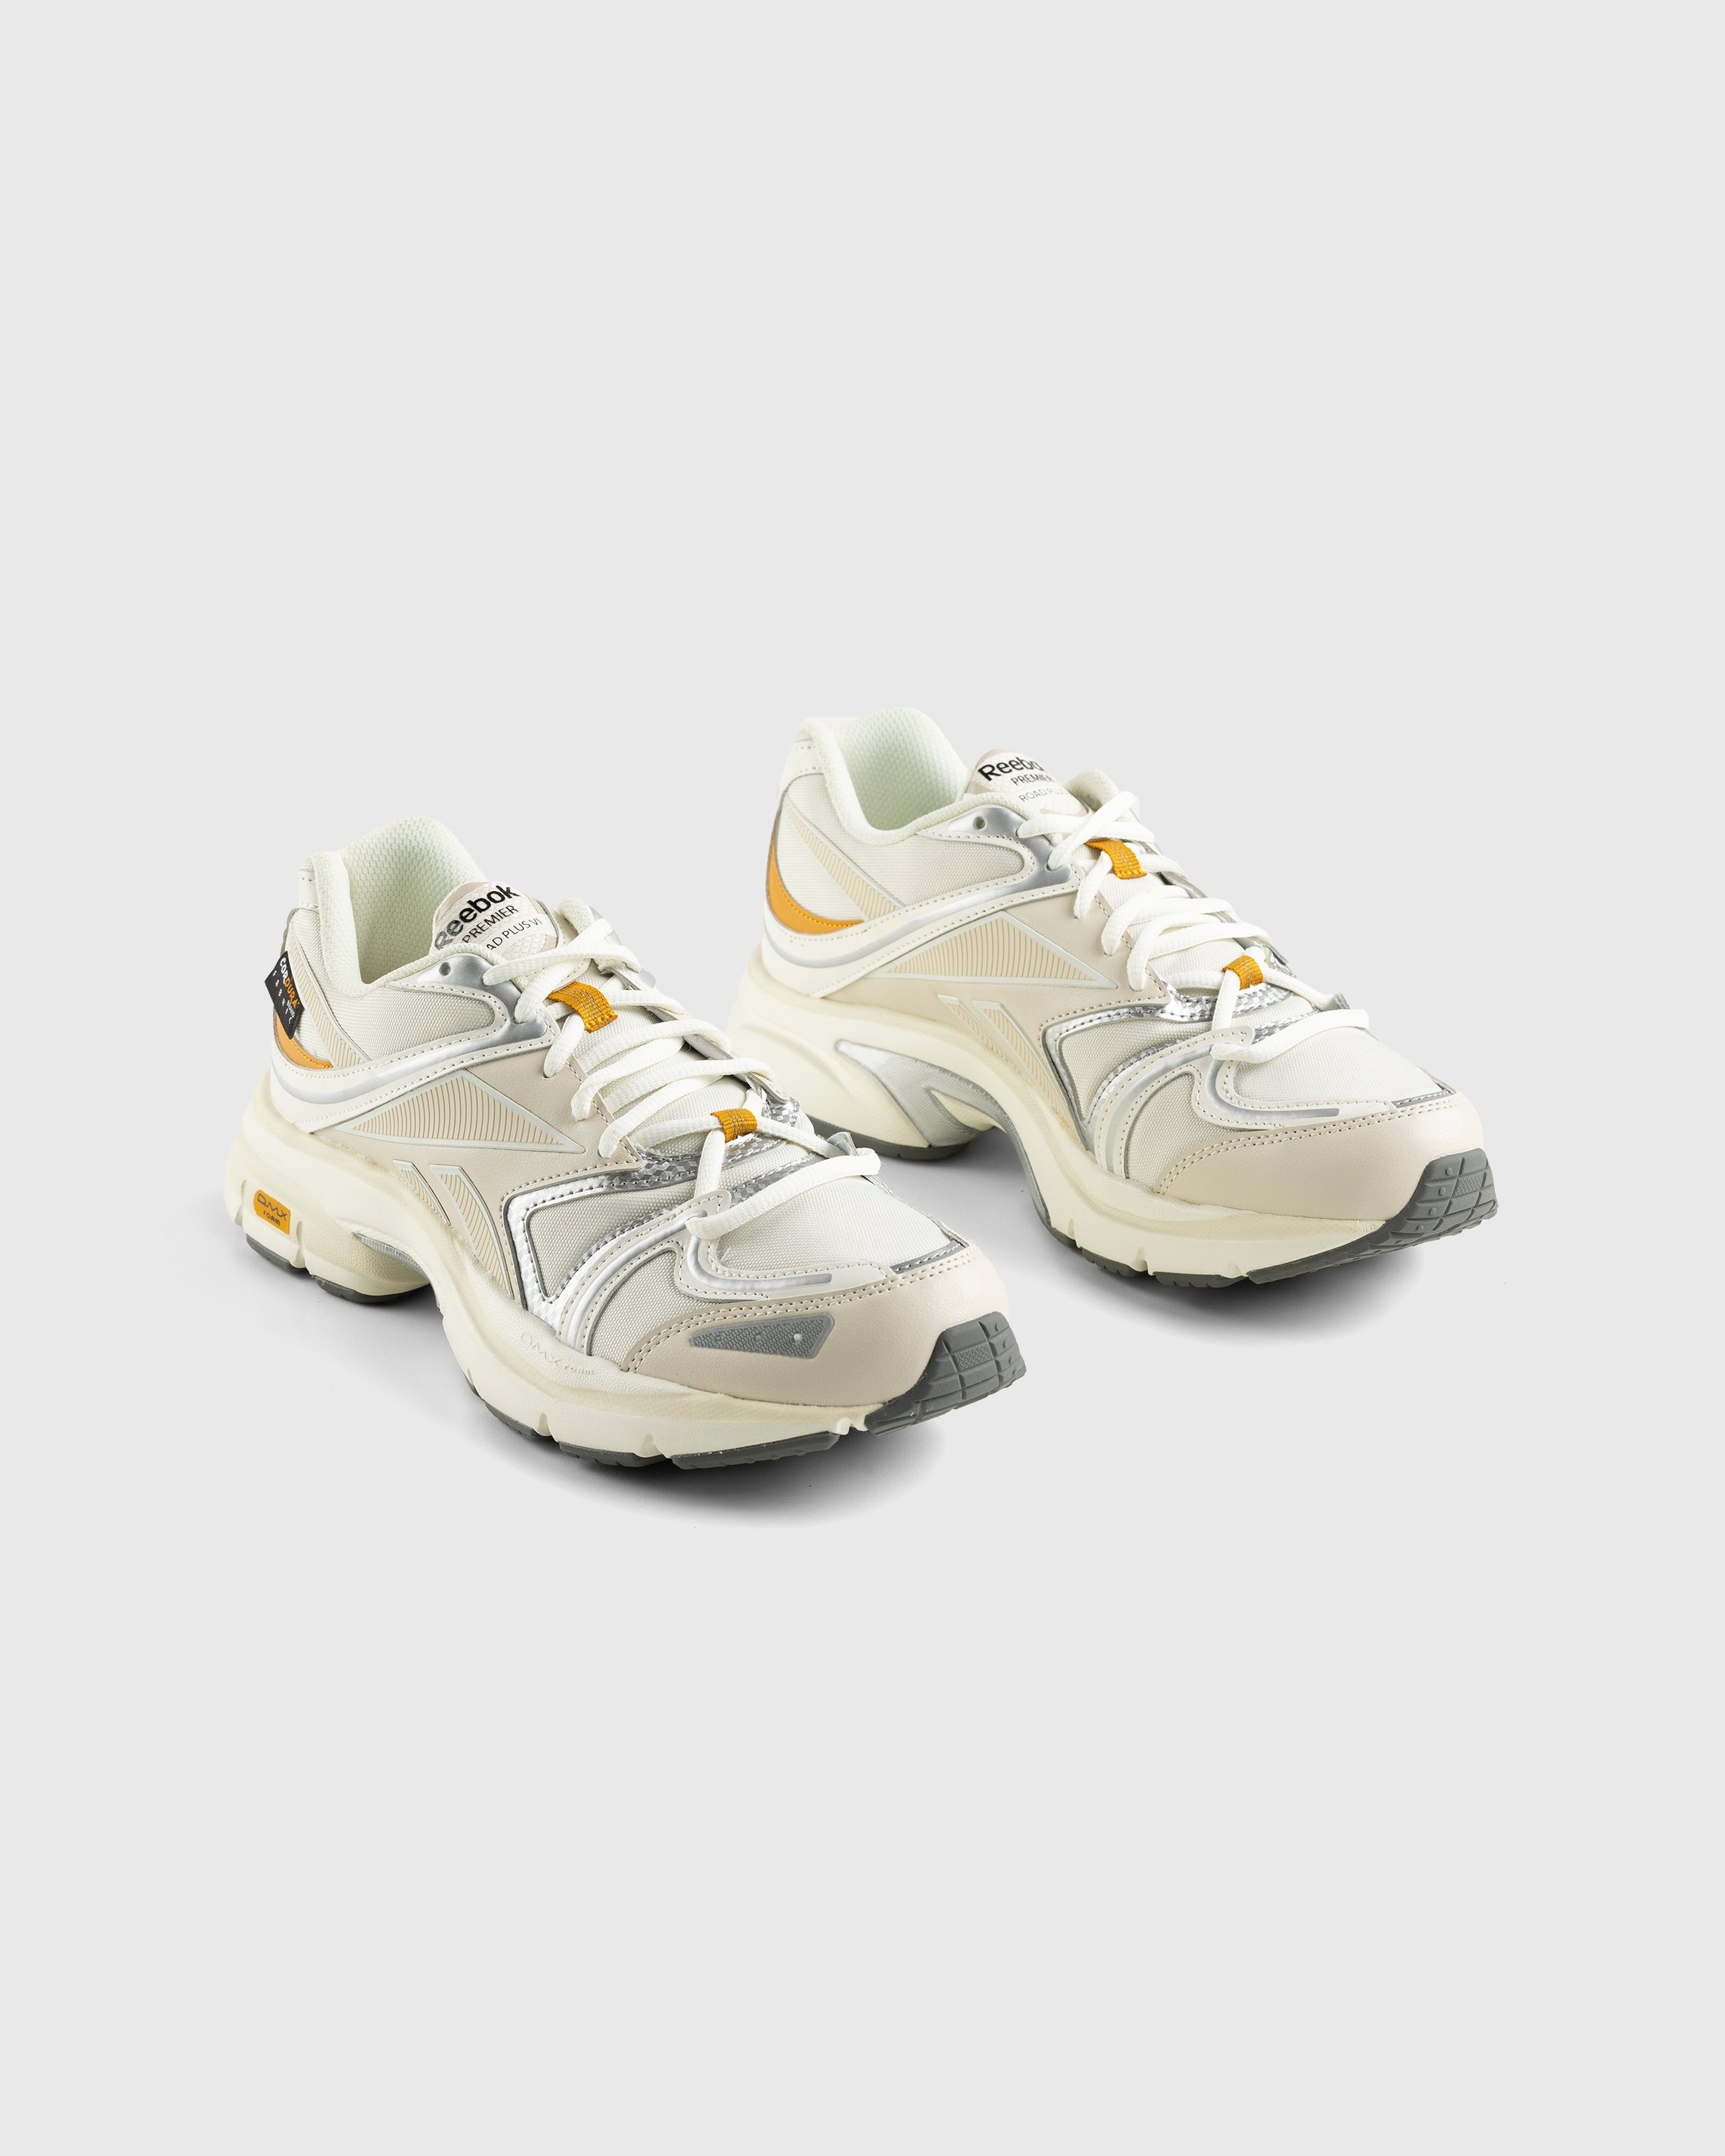 Reebok – Premier Road Plus VI Beige - Low Top Sneakers - Beige - Image 3